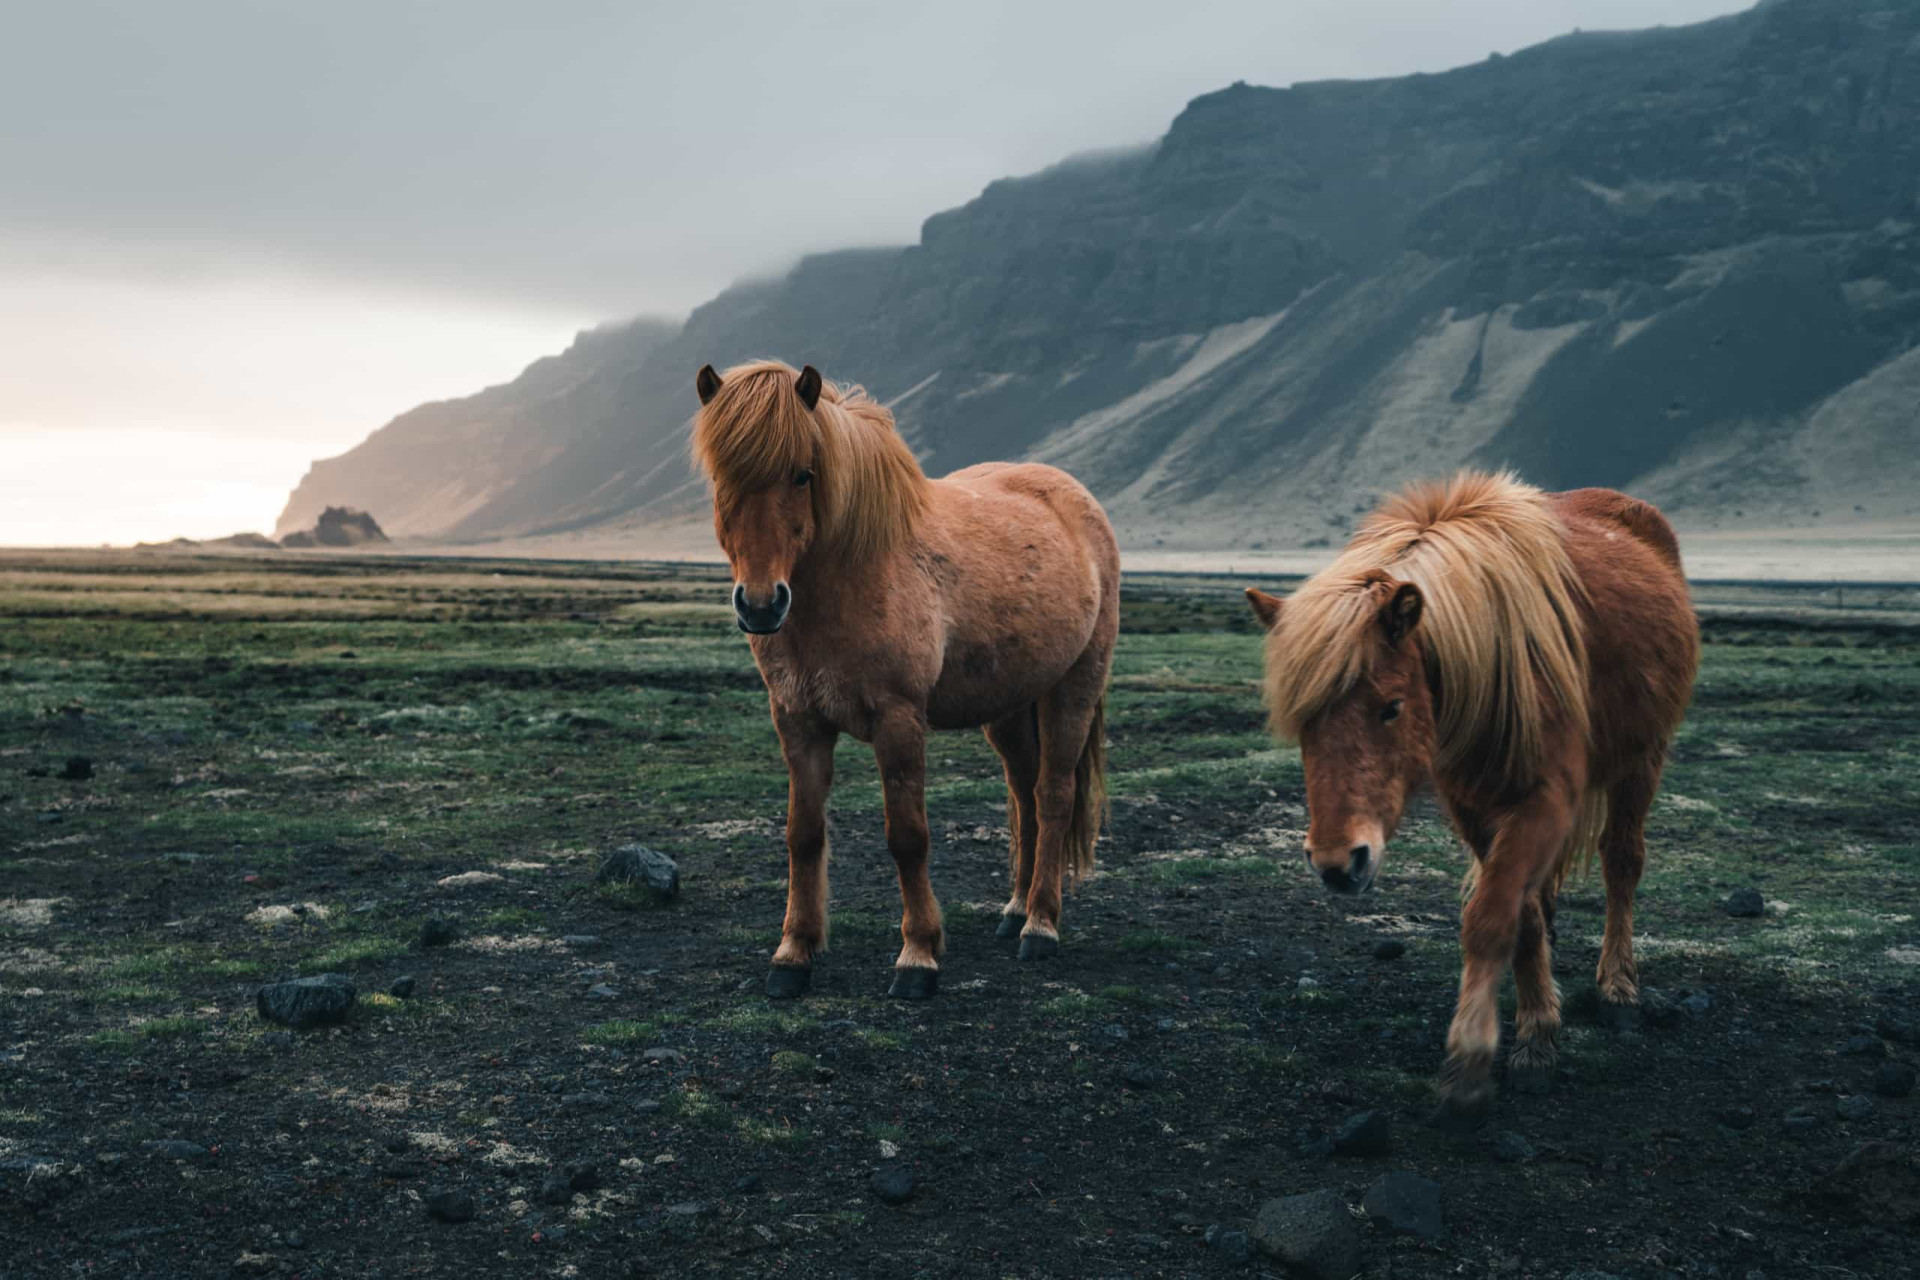 <p>Petit, robuste et surtout adorable, le cheval islandais est célèbre pour les différentes teintes de sa robe. Saviez-vous qu'il existe plus de 100 noms pour les différentes teintes de couleurs dans la langue islandaise? </p> <p>Ne les nourrissez-pas, cela pourrait mettre les éleveurs très en colère! </p><p><a href="https://www.msn.com/fr-fr/community/channel/vid-7xx8mnucu55yw63we9va2gwr7uihbxwc68fxqp25x6tg4ftibpra?cvid=94631541bc0f4f89bfd59158d696ad7e">Suivez-nous et accédez tous les jours à du contenu exclusif</a></p>